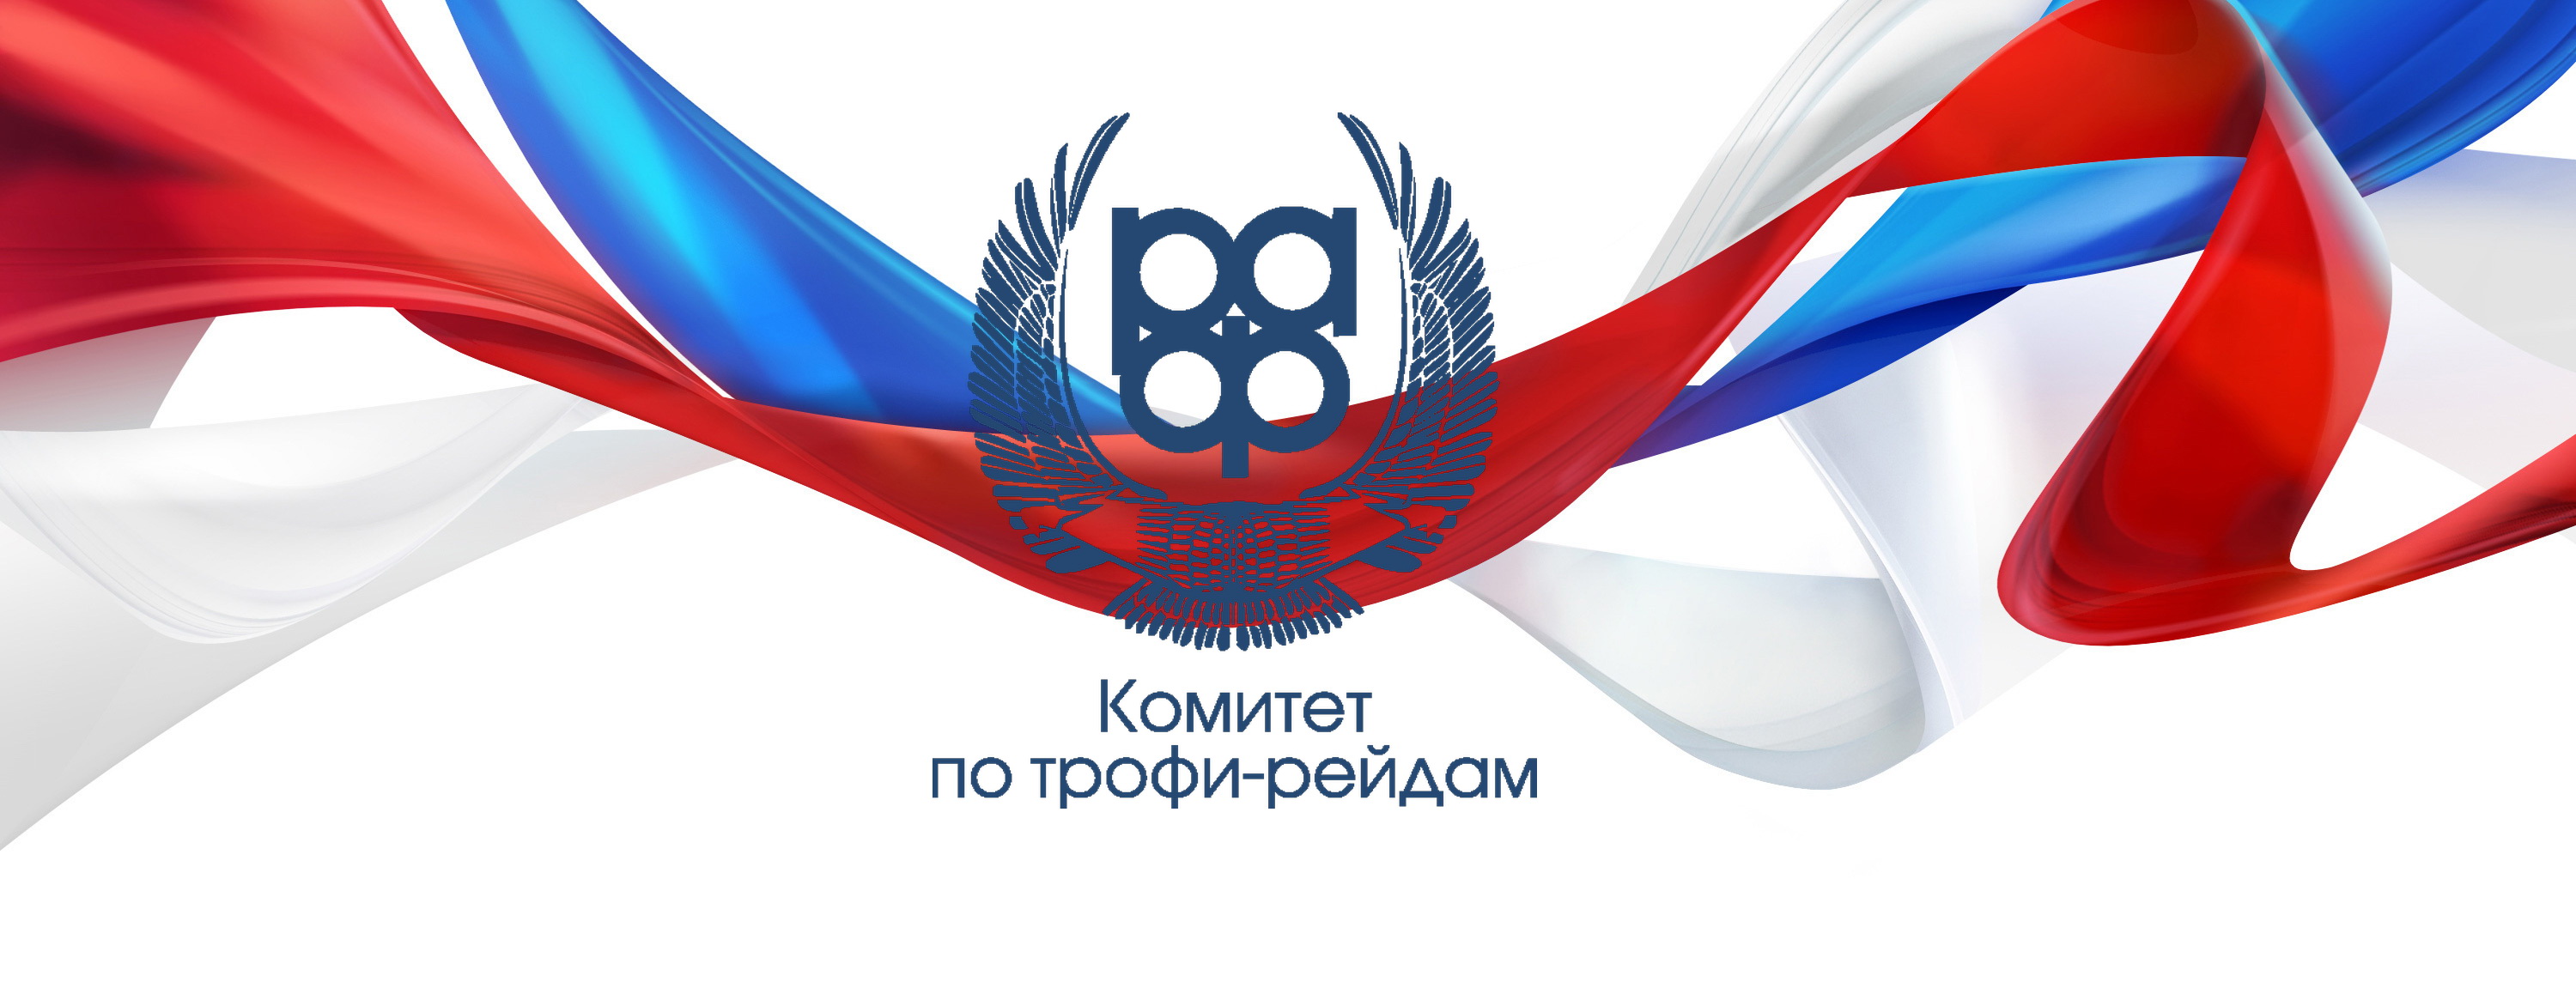 Регламент первого этапа Чемпионата России по трофи-рейдам 2019